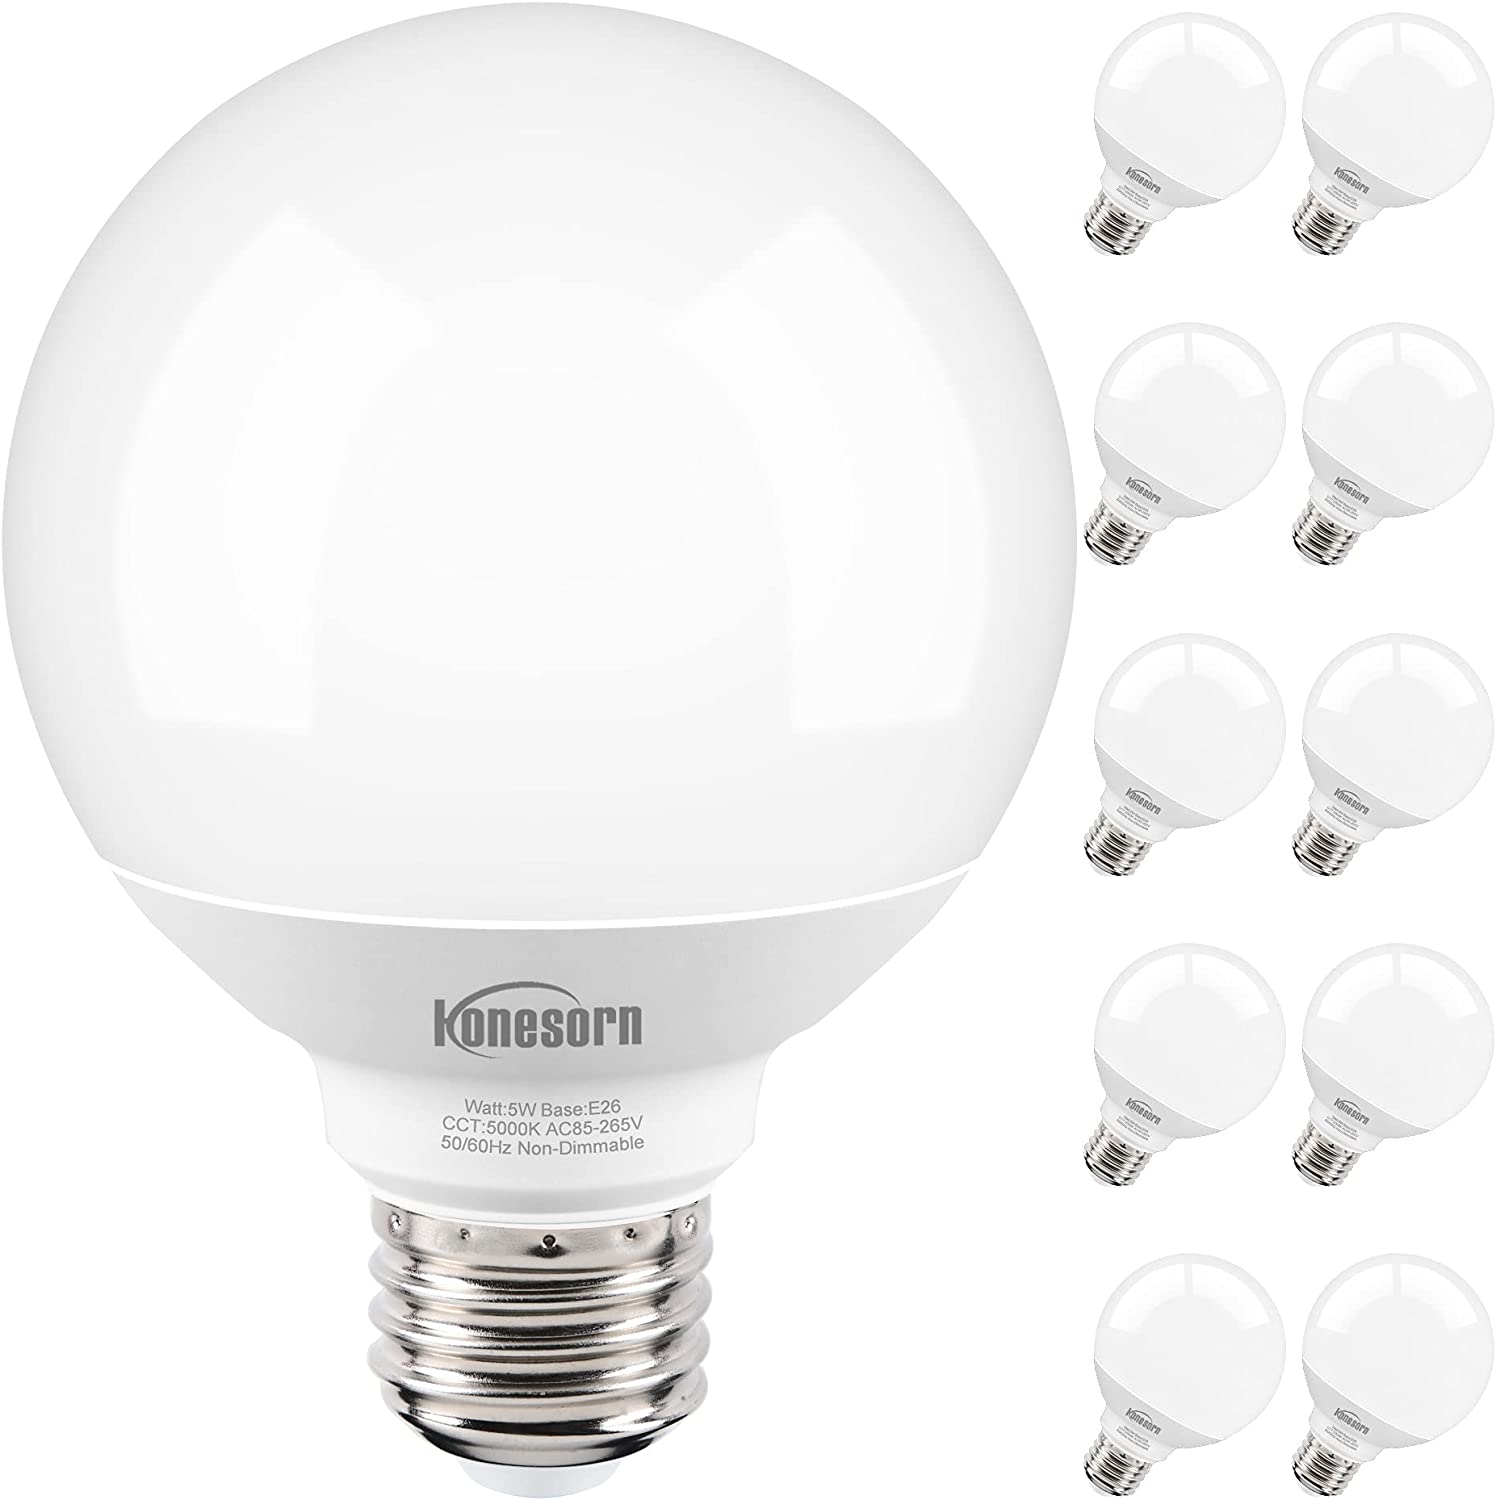 Honesorn 10 Pack G25 LED Globe Light Bulbs, 40 Watt [...]